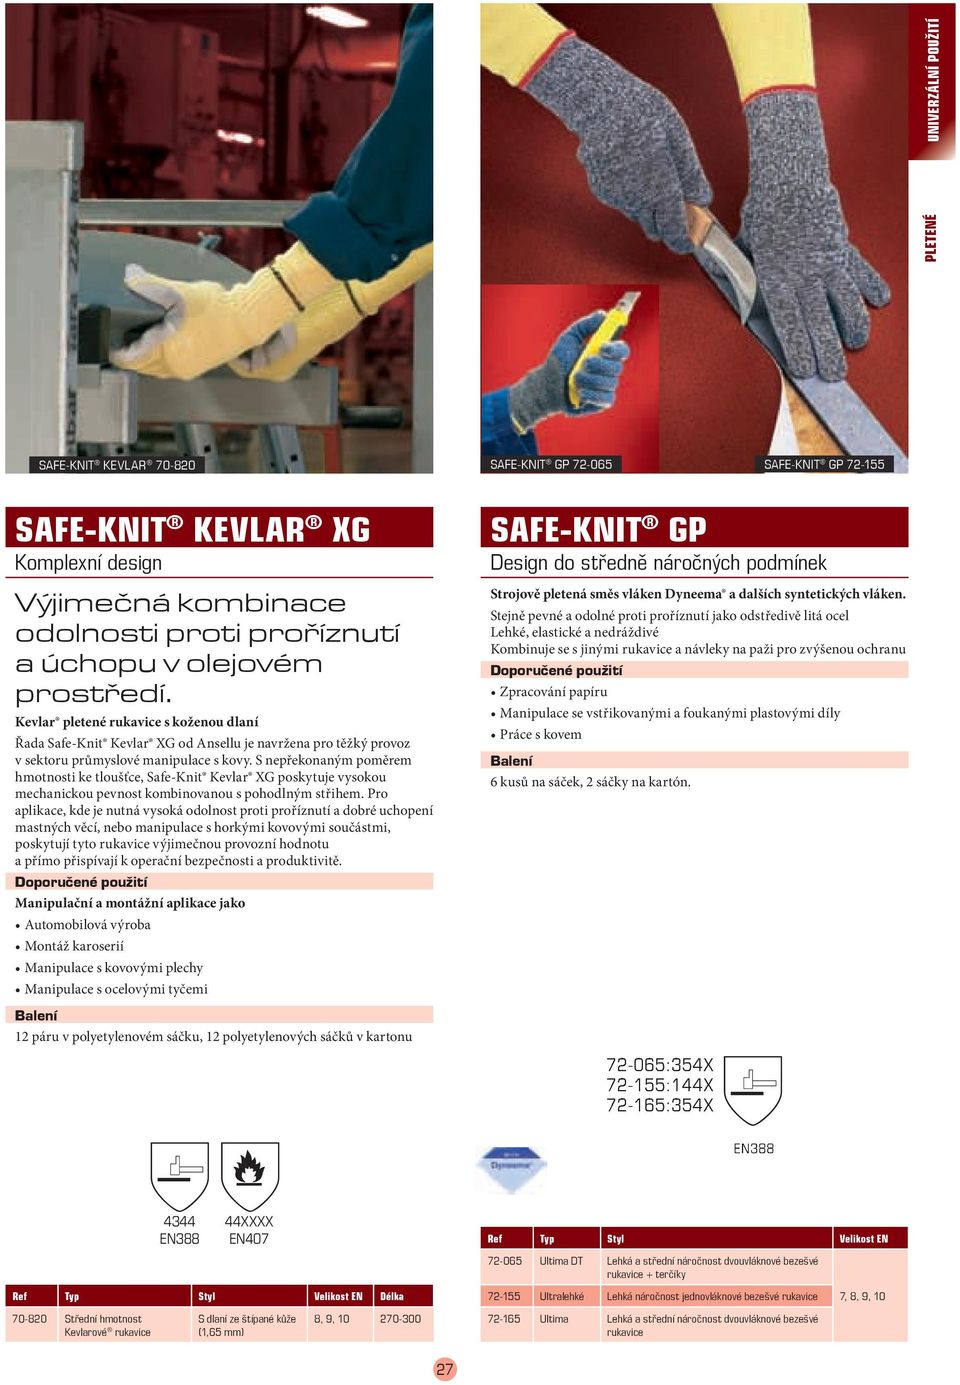 S nepřekonaným poměrem hmotnosti ke tloušťce, Safe-Knit Kevlar XG poskytuje vysokou mechanickou pevnost kombinovanou s pohodlným střihem.